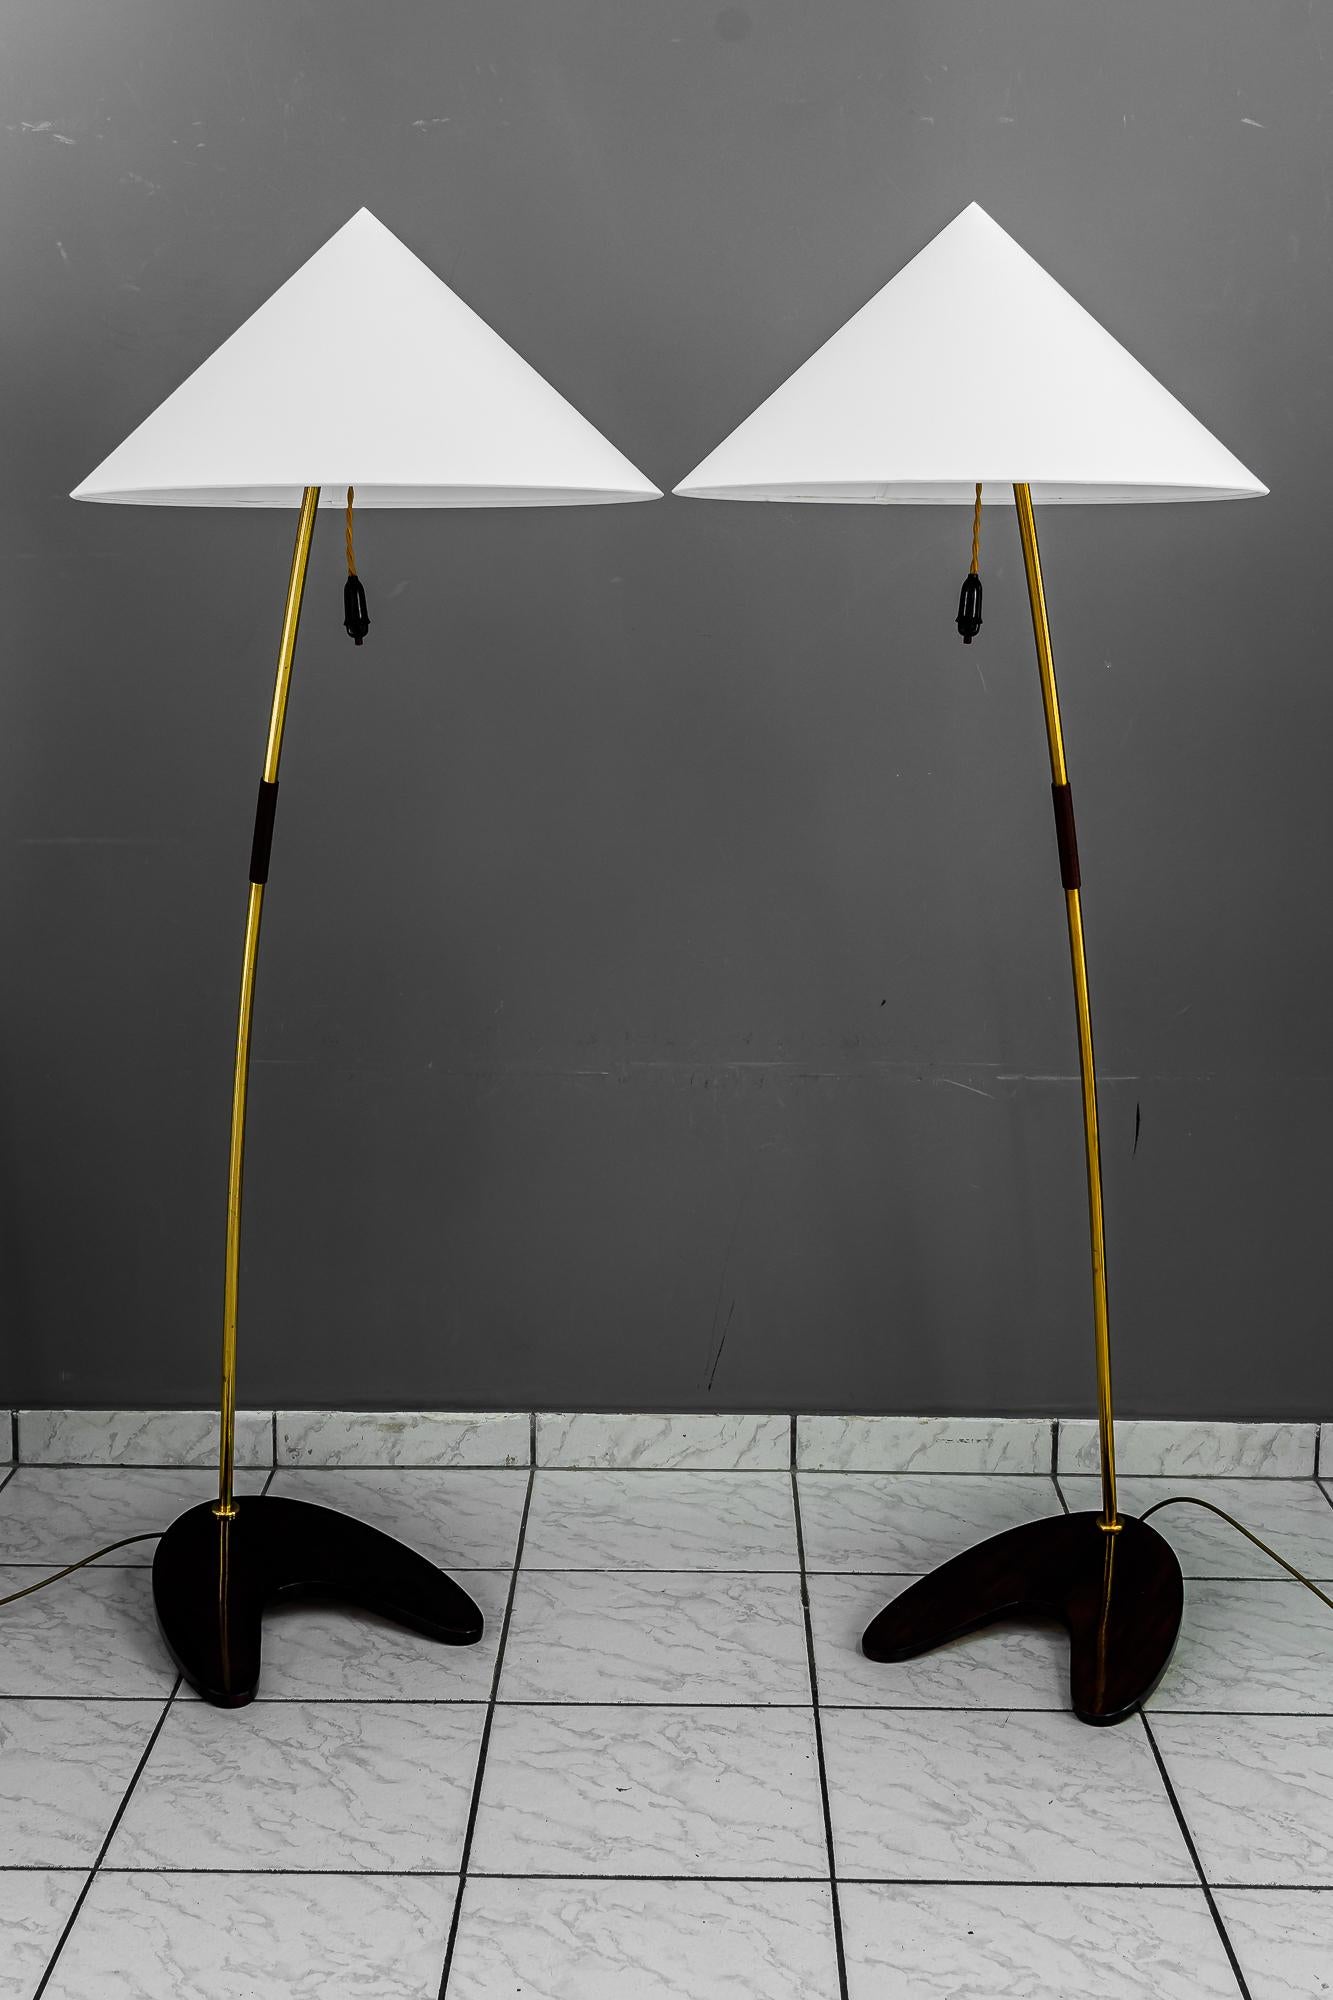 Zwei Rupert Nikoll Stehlampen Wien um 1950er Jahre
Messing und Holz
Originalzustand
Die Lampenschirme werden ersetzt (neu)
Glühbirne ist E27 bis zu 100 Watt.